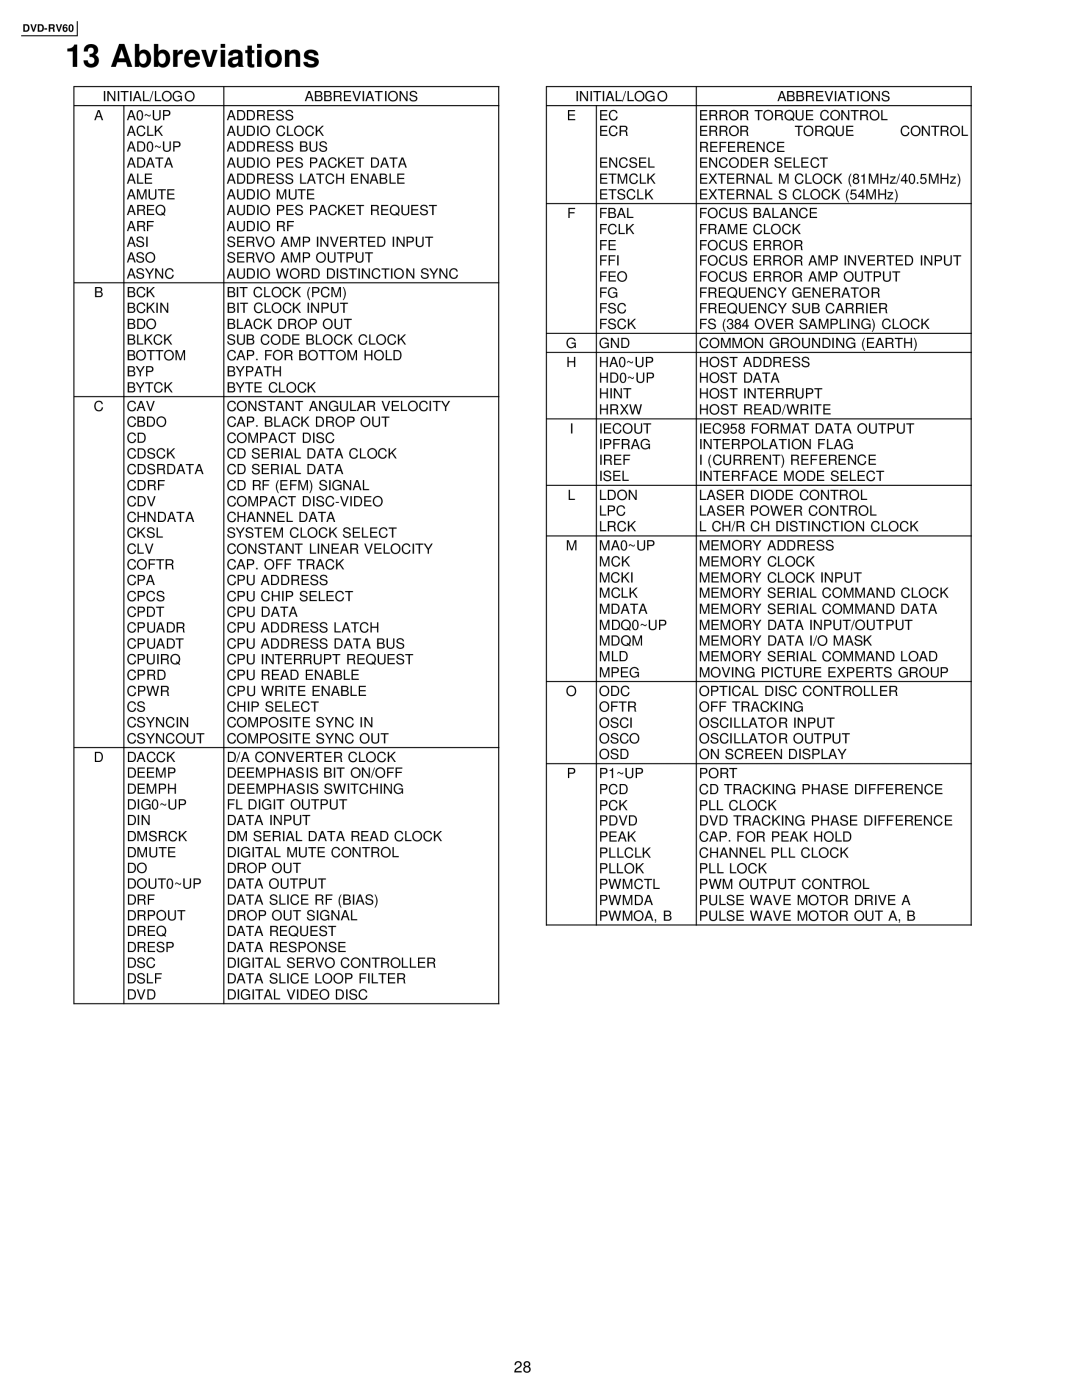 Panasonic DVDRV60 specifications Abbreviations 